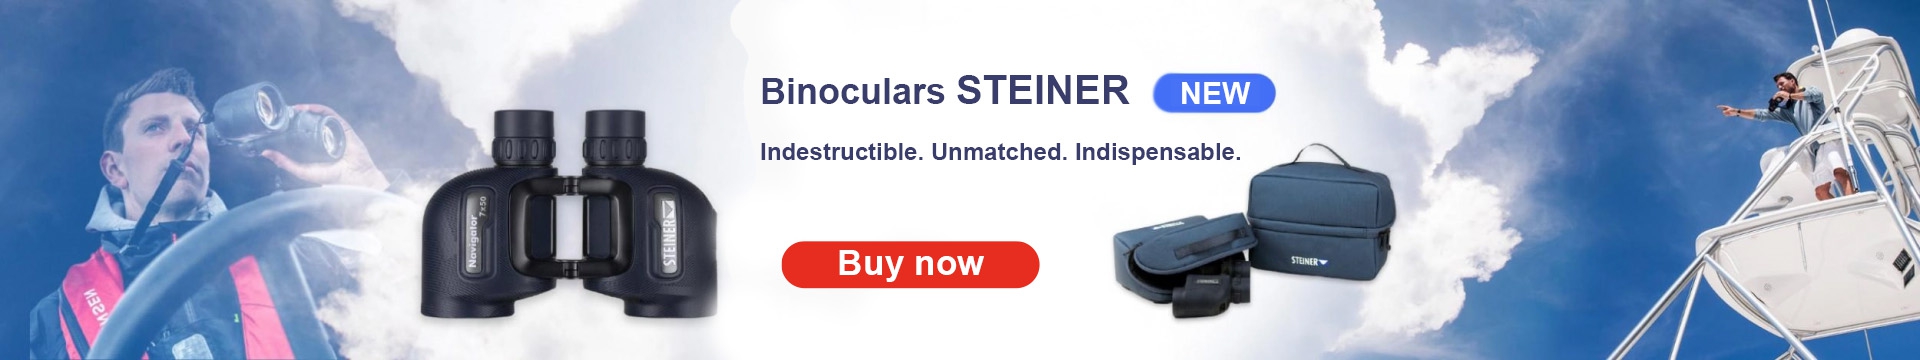 Steiner promo